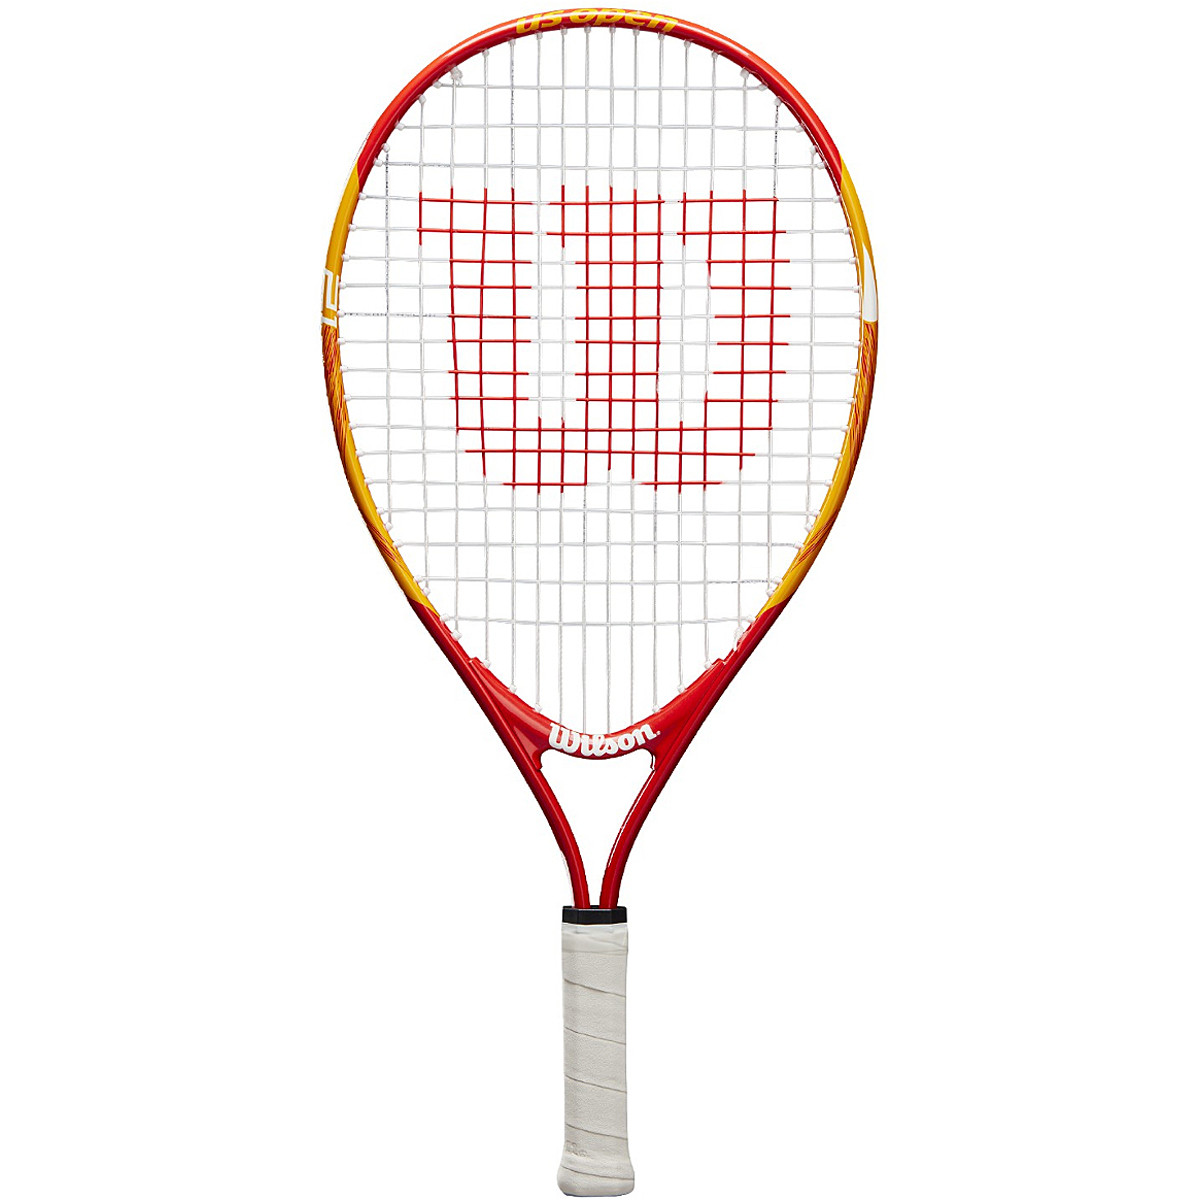 Озон ракетки для тенниса. Ракетка для большого тенниса Wilson. Теннисная ракетка для большого тенниса Wilson. Ракетка Вилсон фактор для большого тенниса. Wilson n53 теннисная ракетка.